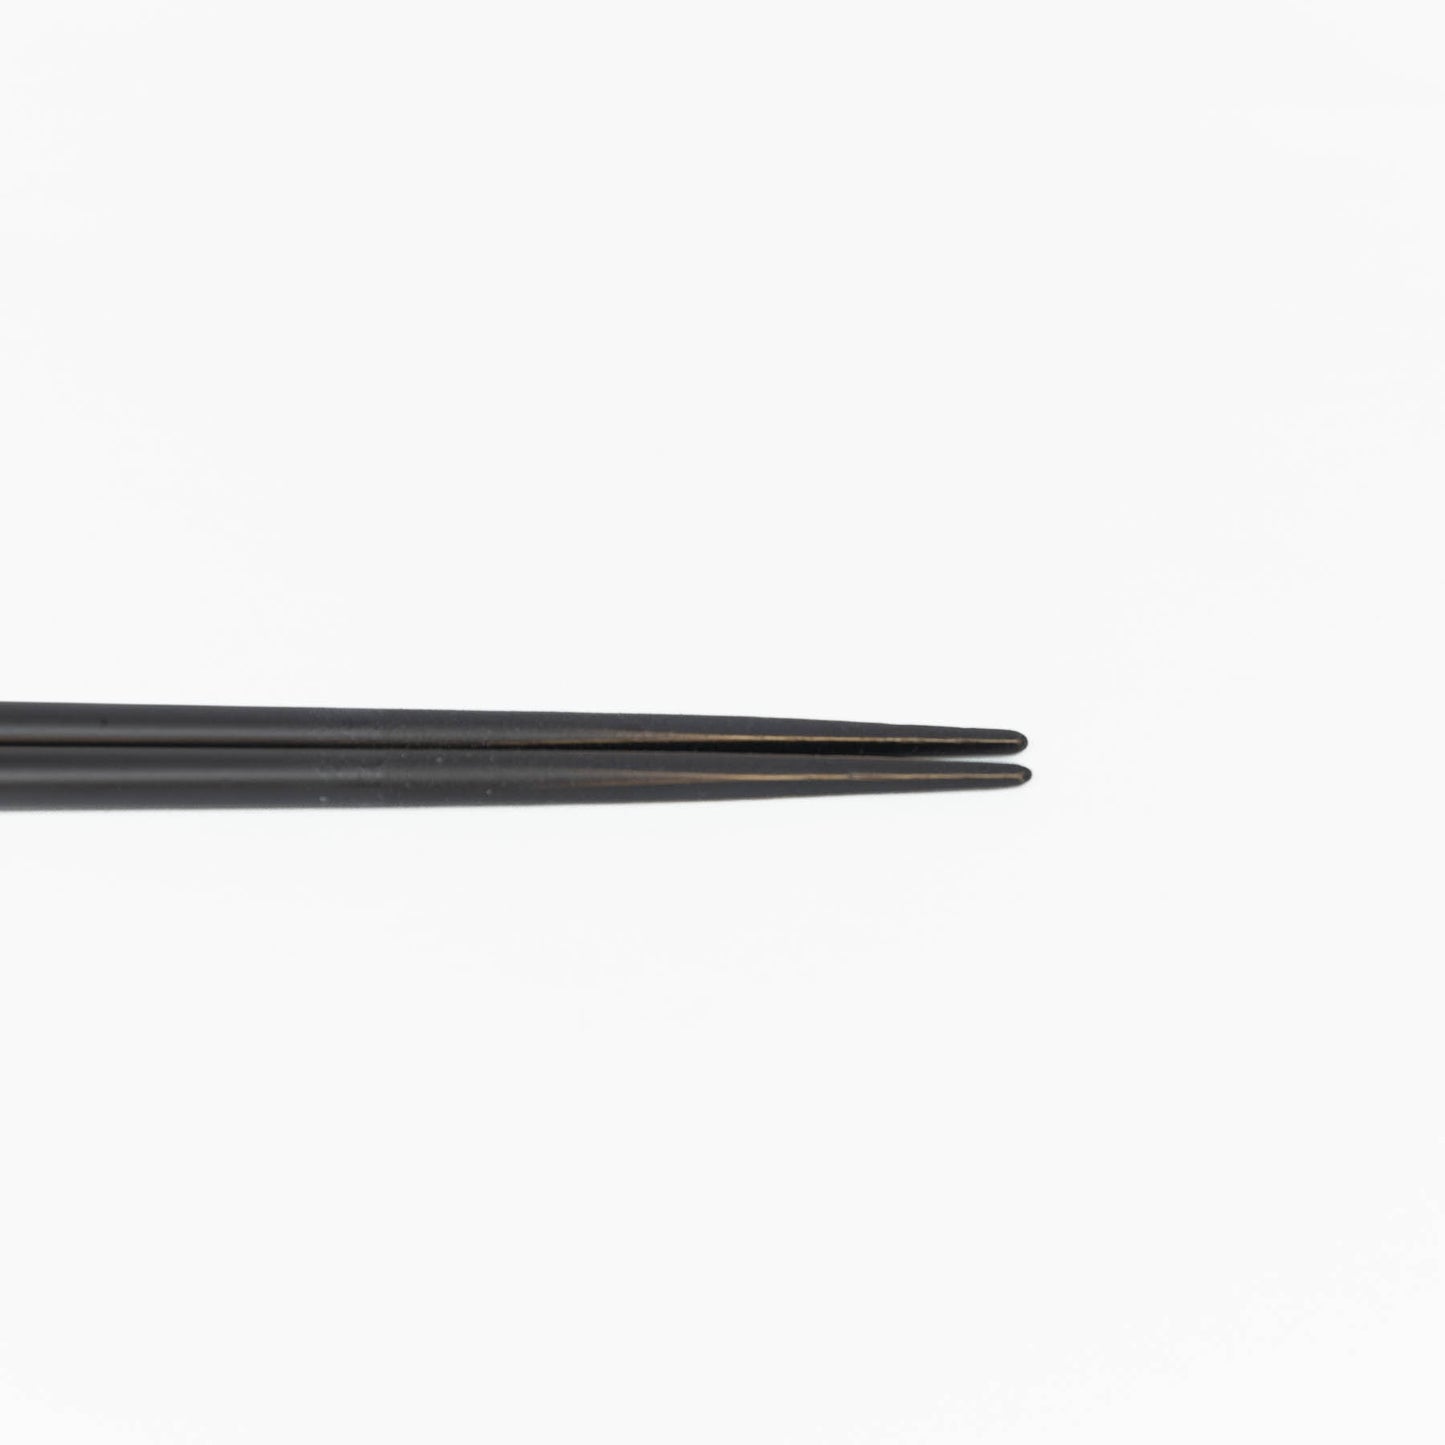 Graport  -Iinitial Chopsticks - Black